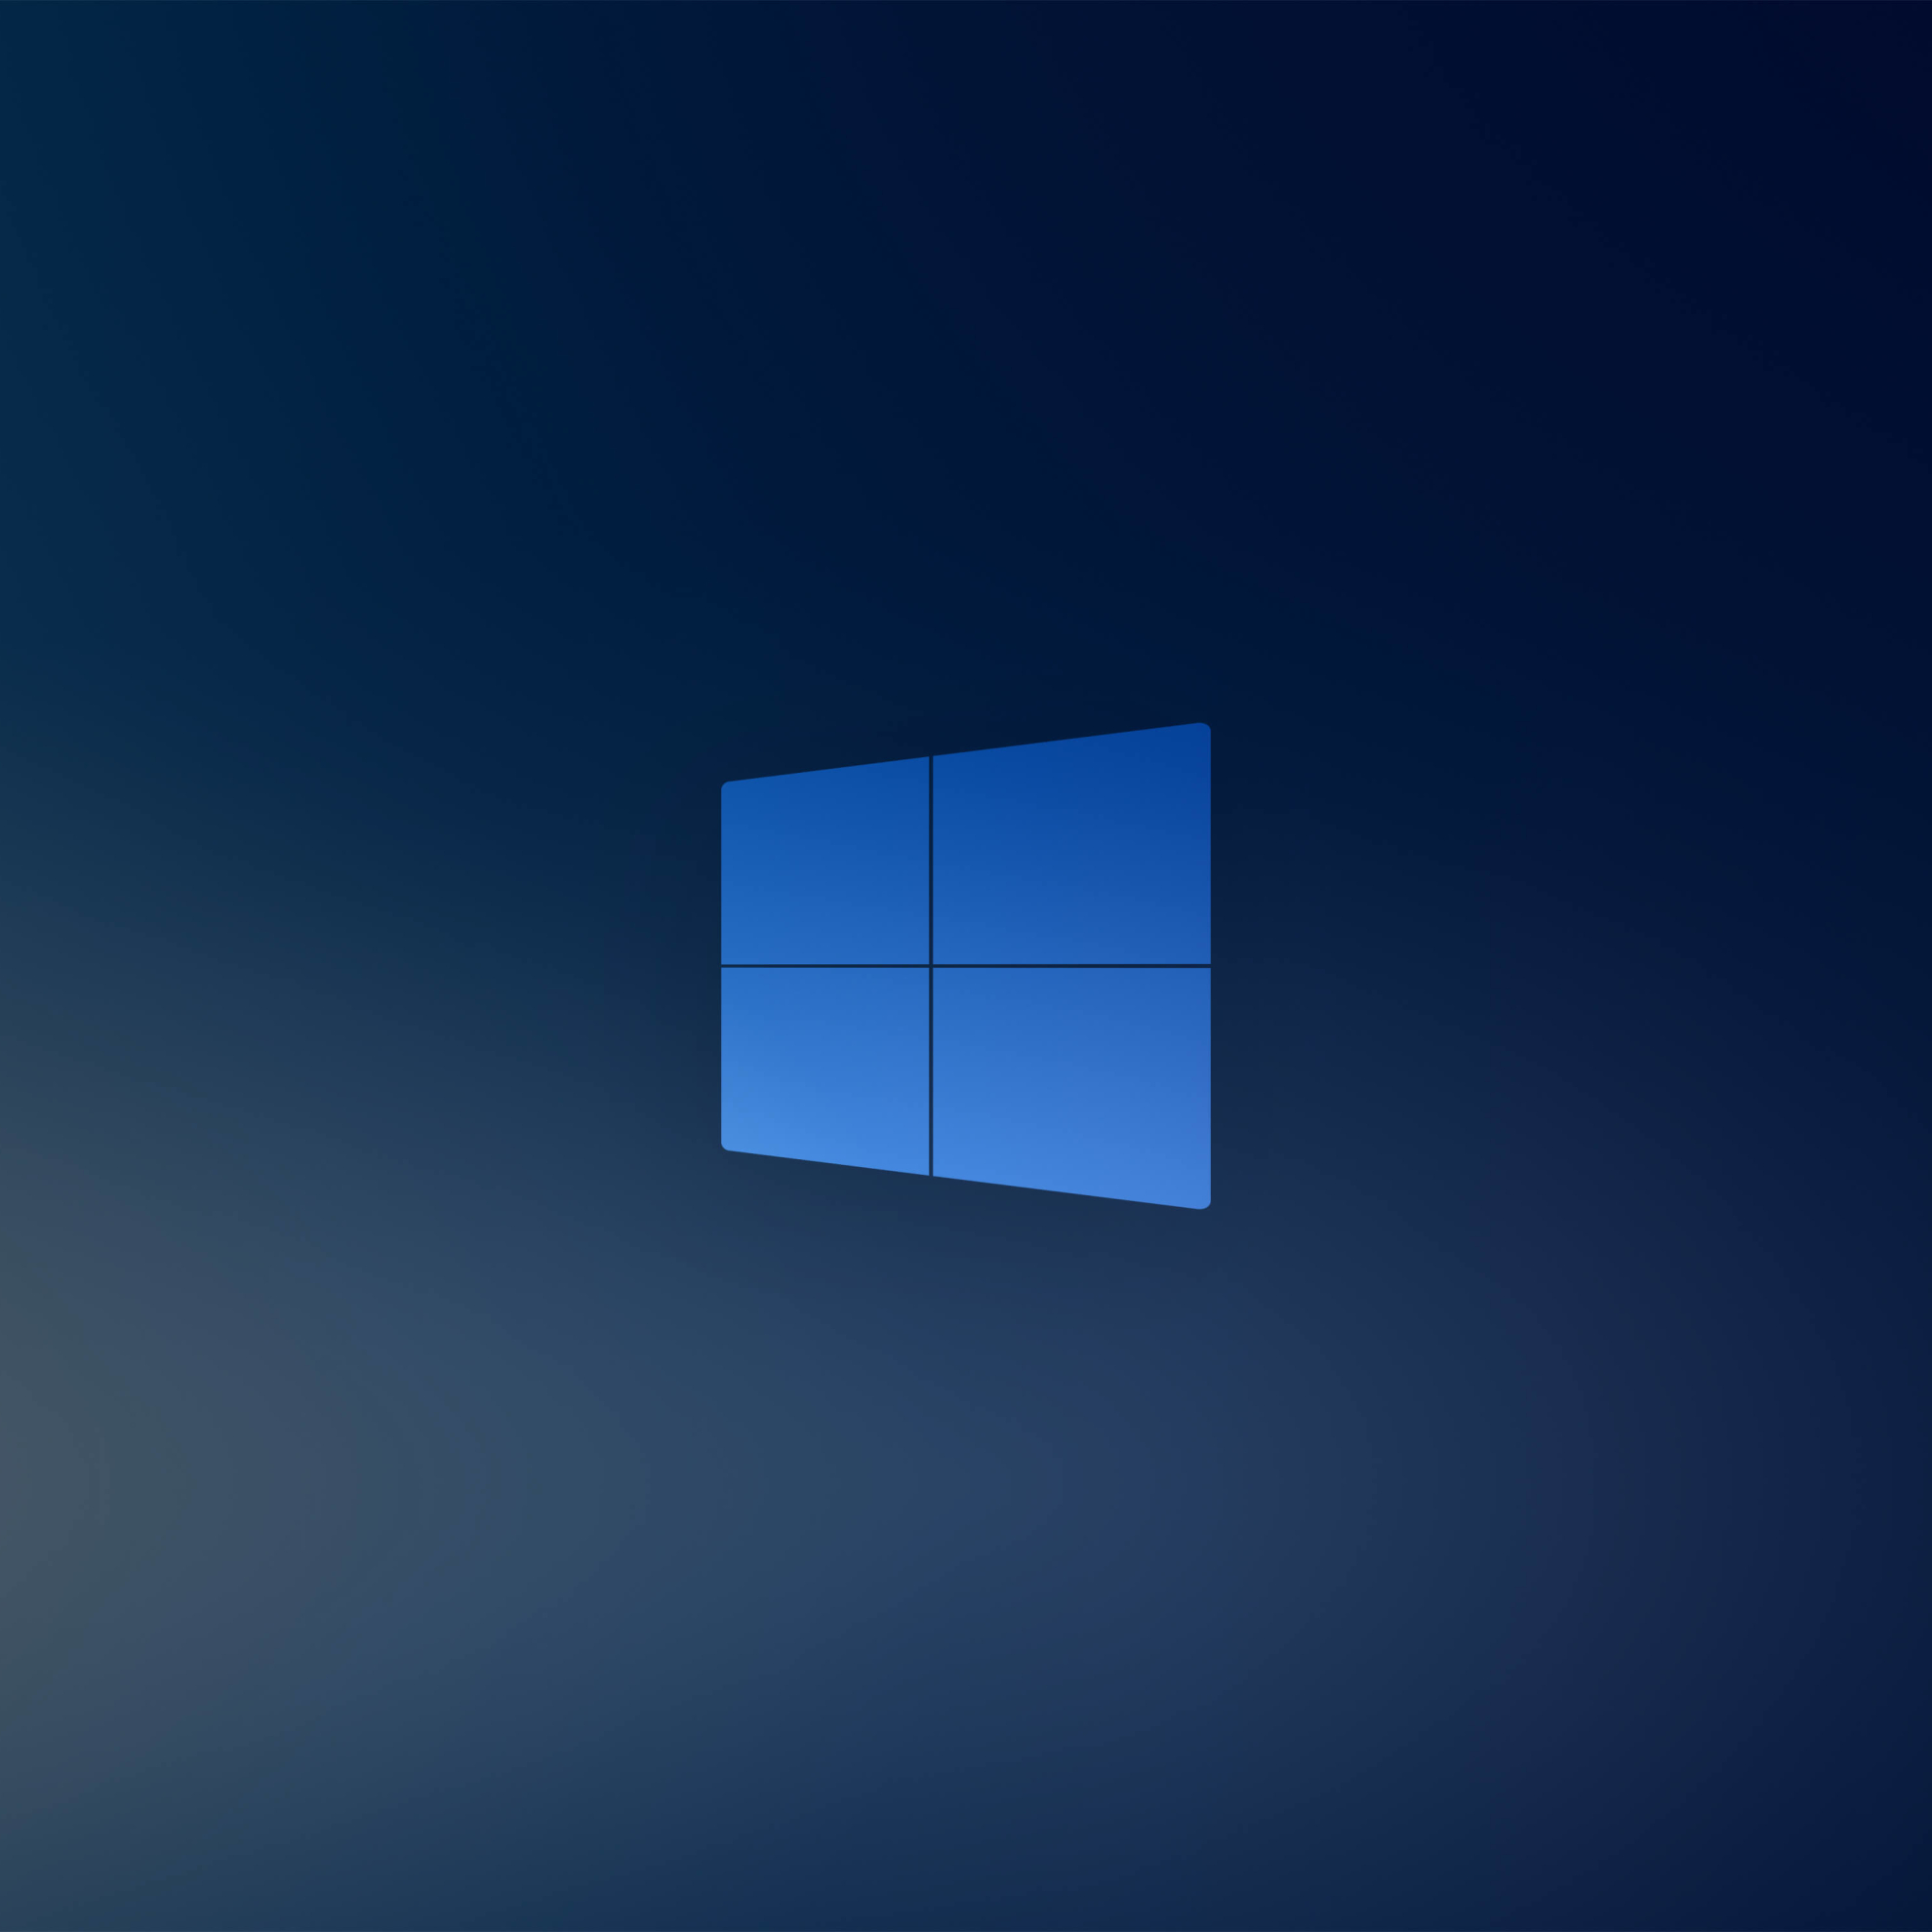 1980x1980 Windows 10X Blue Logo 1980x1980 Resolution Wallpaper, HD Hi ...